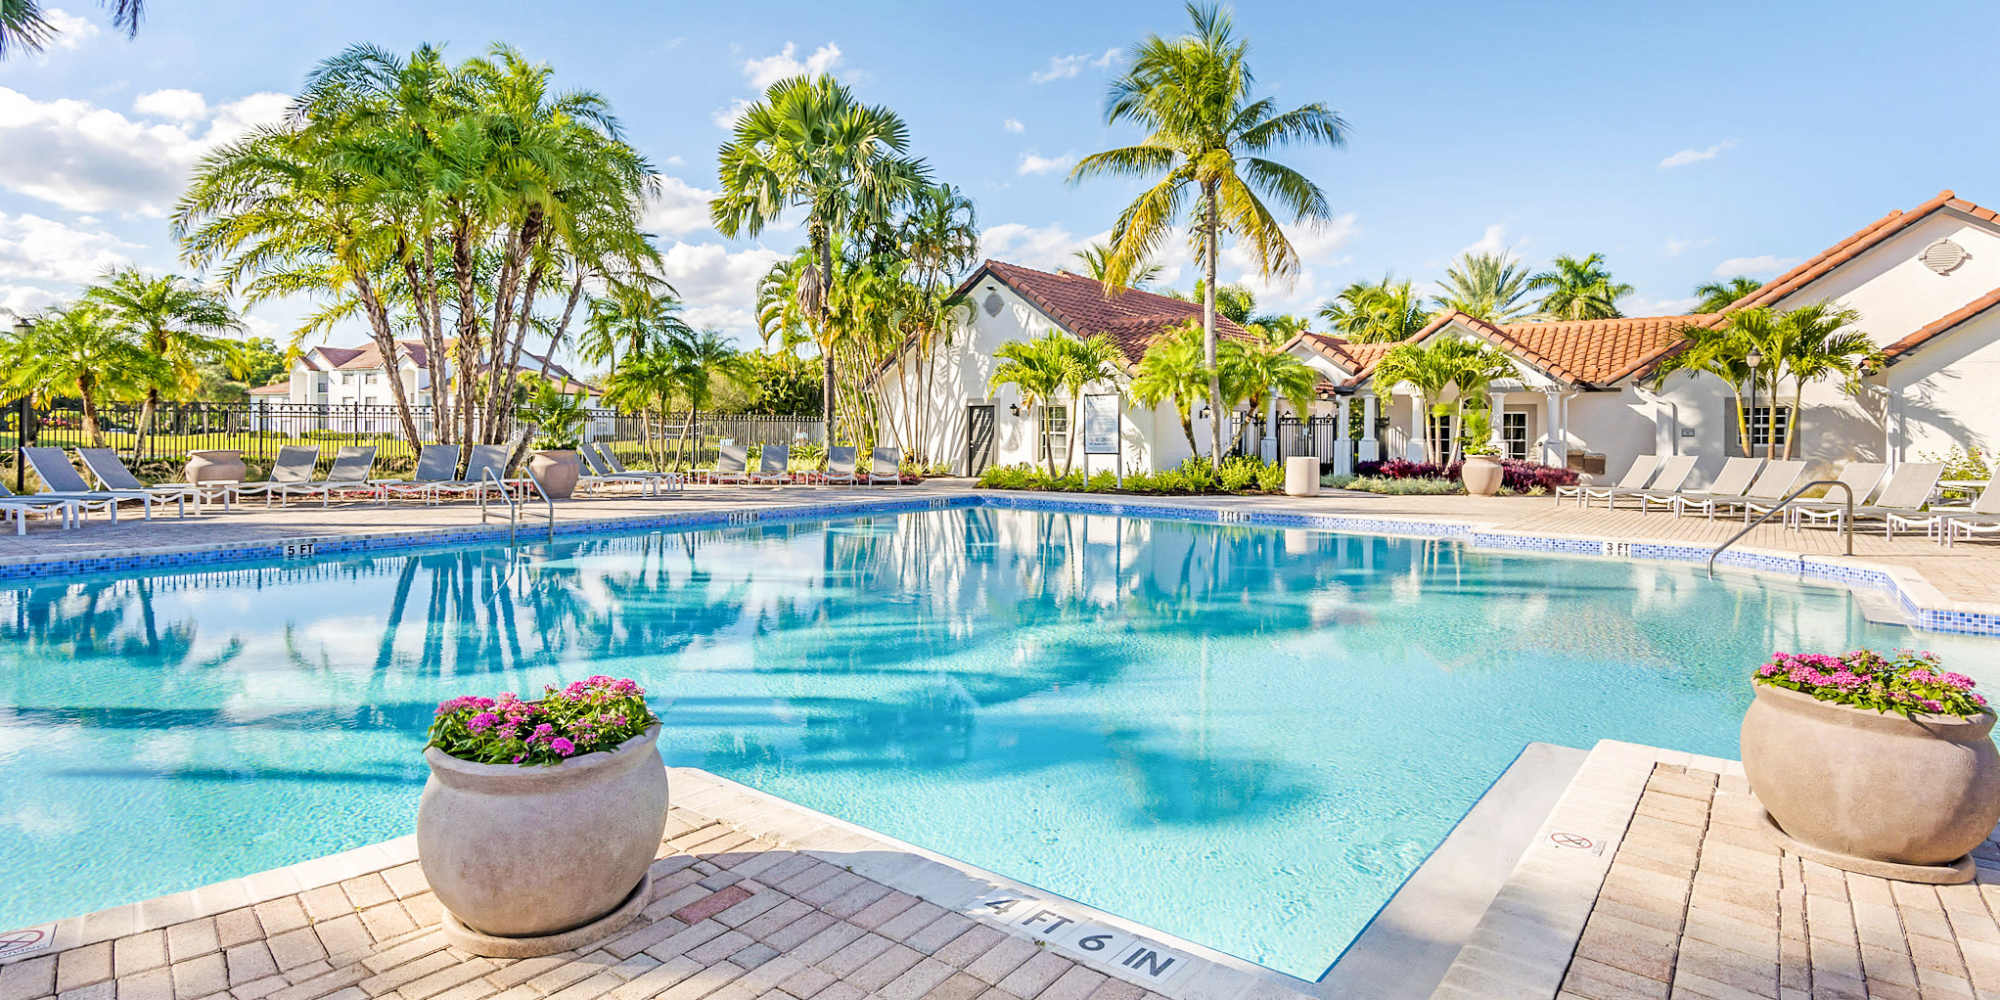 Oasis Delray Beach apartments in Delray Beach, Florida